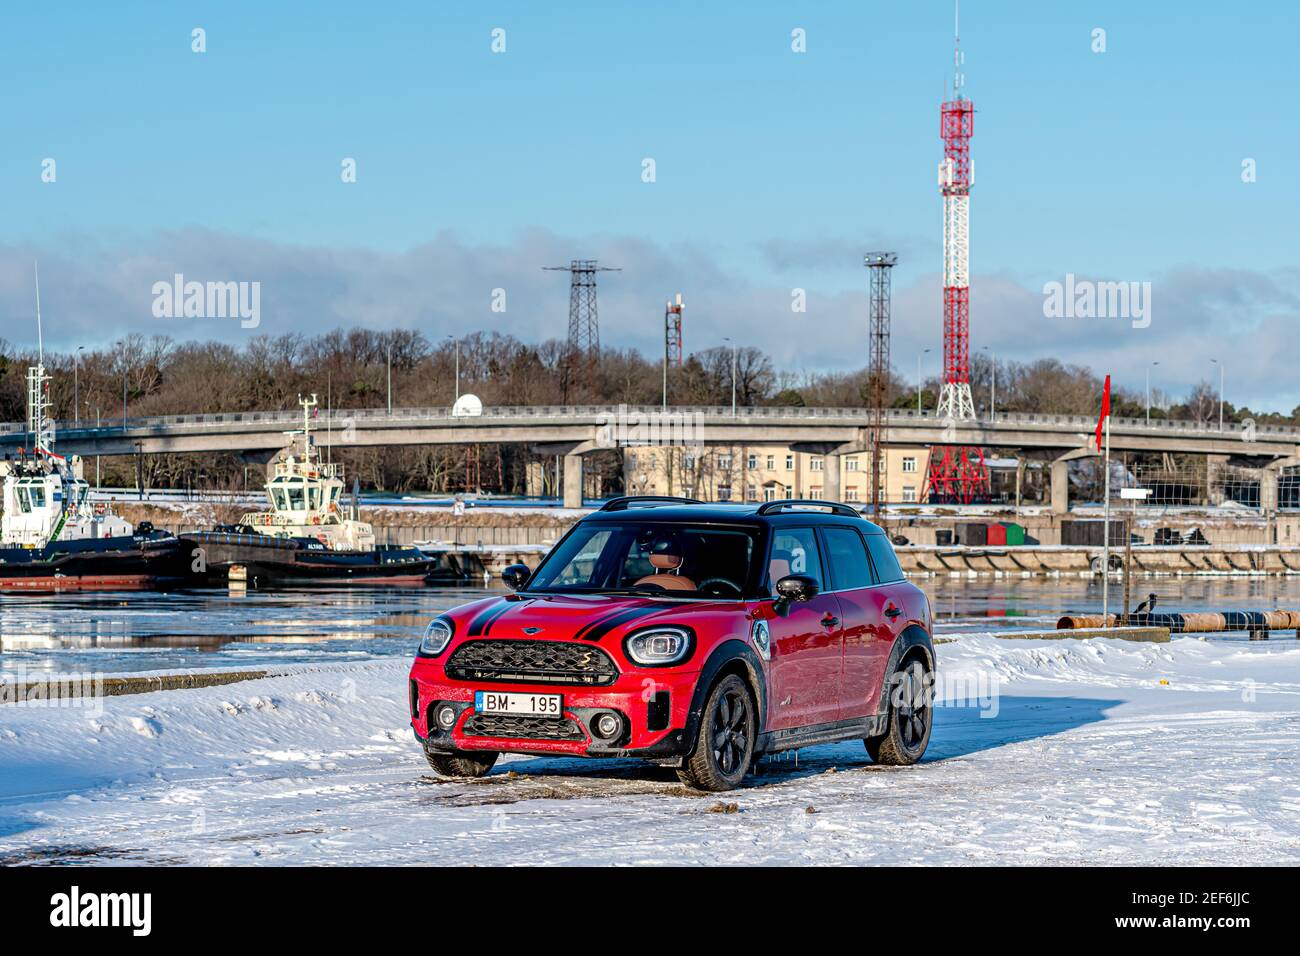 Ventspils, Lettland, 6. Februar 2021: Mini Cooper S Countryman - Hybridauto wurde an einem kalten Wintertag auf der Seite des Hafenkanals geparkt Stockfoto